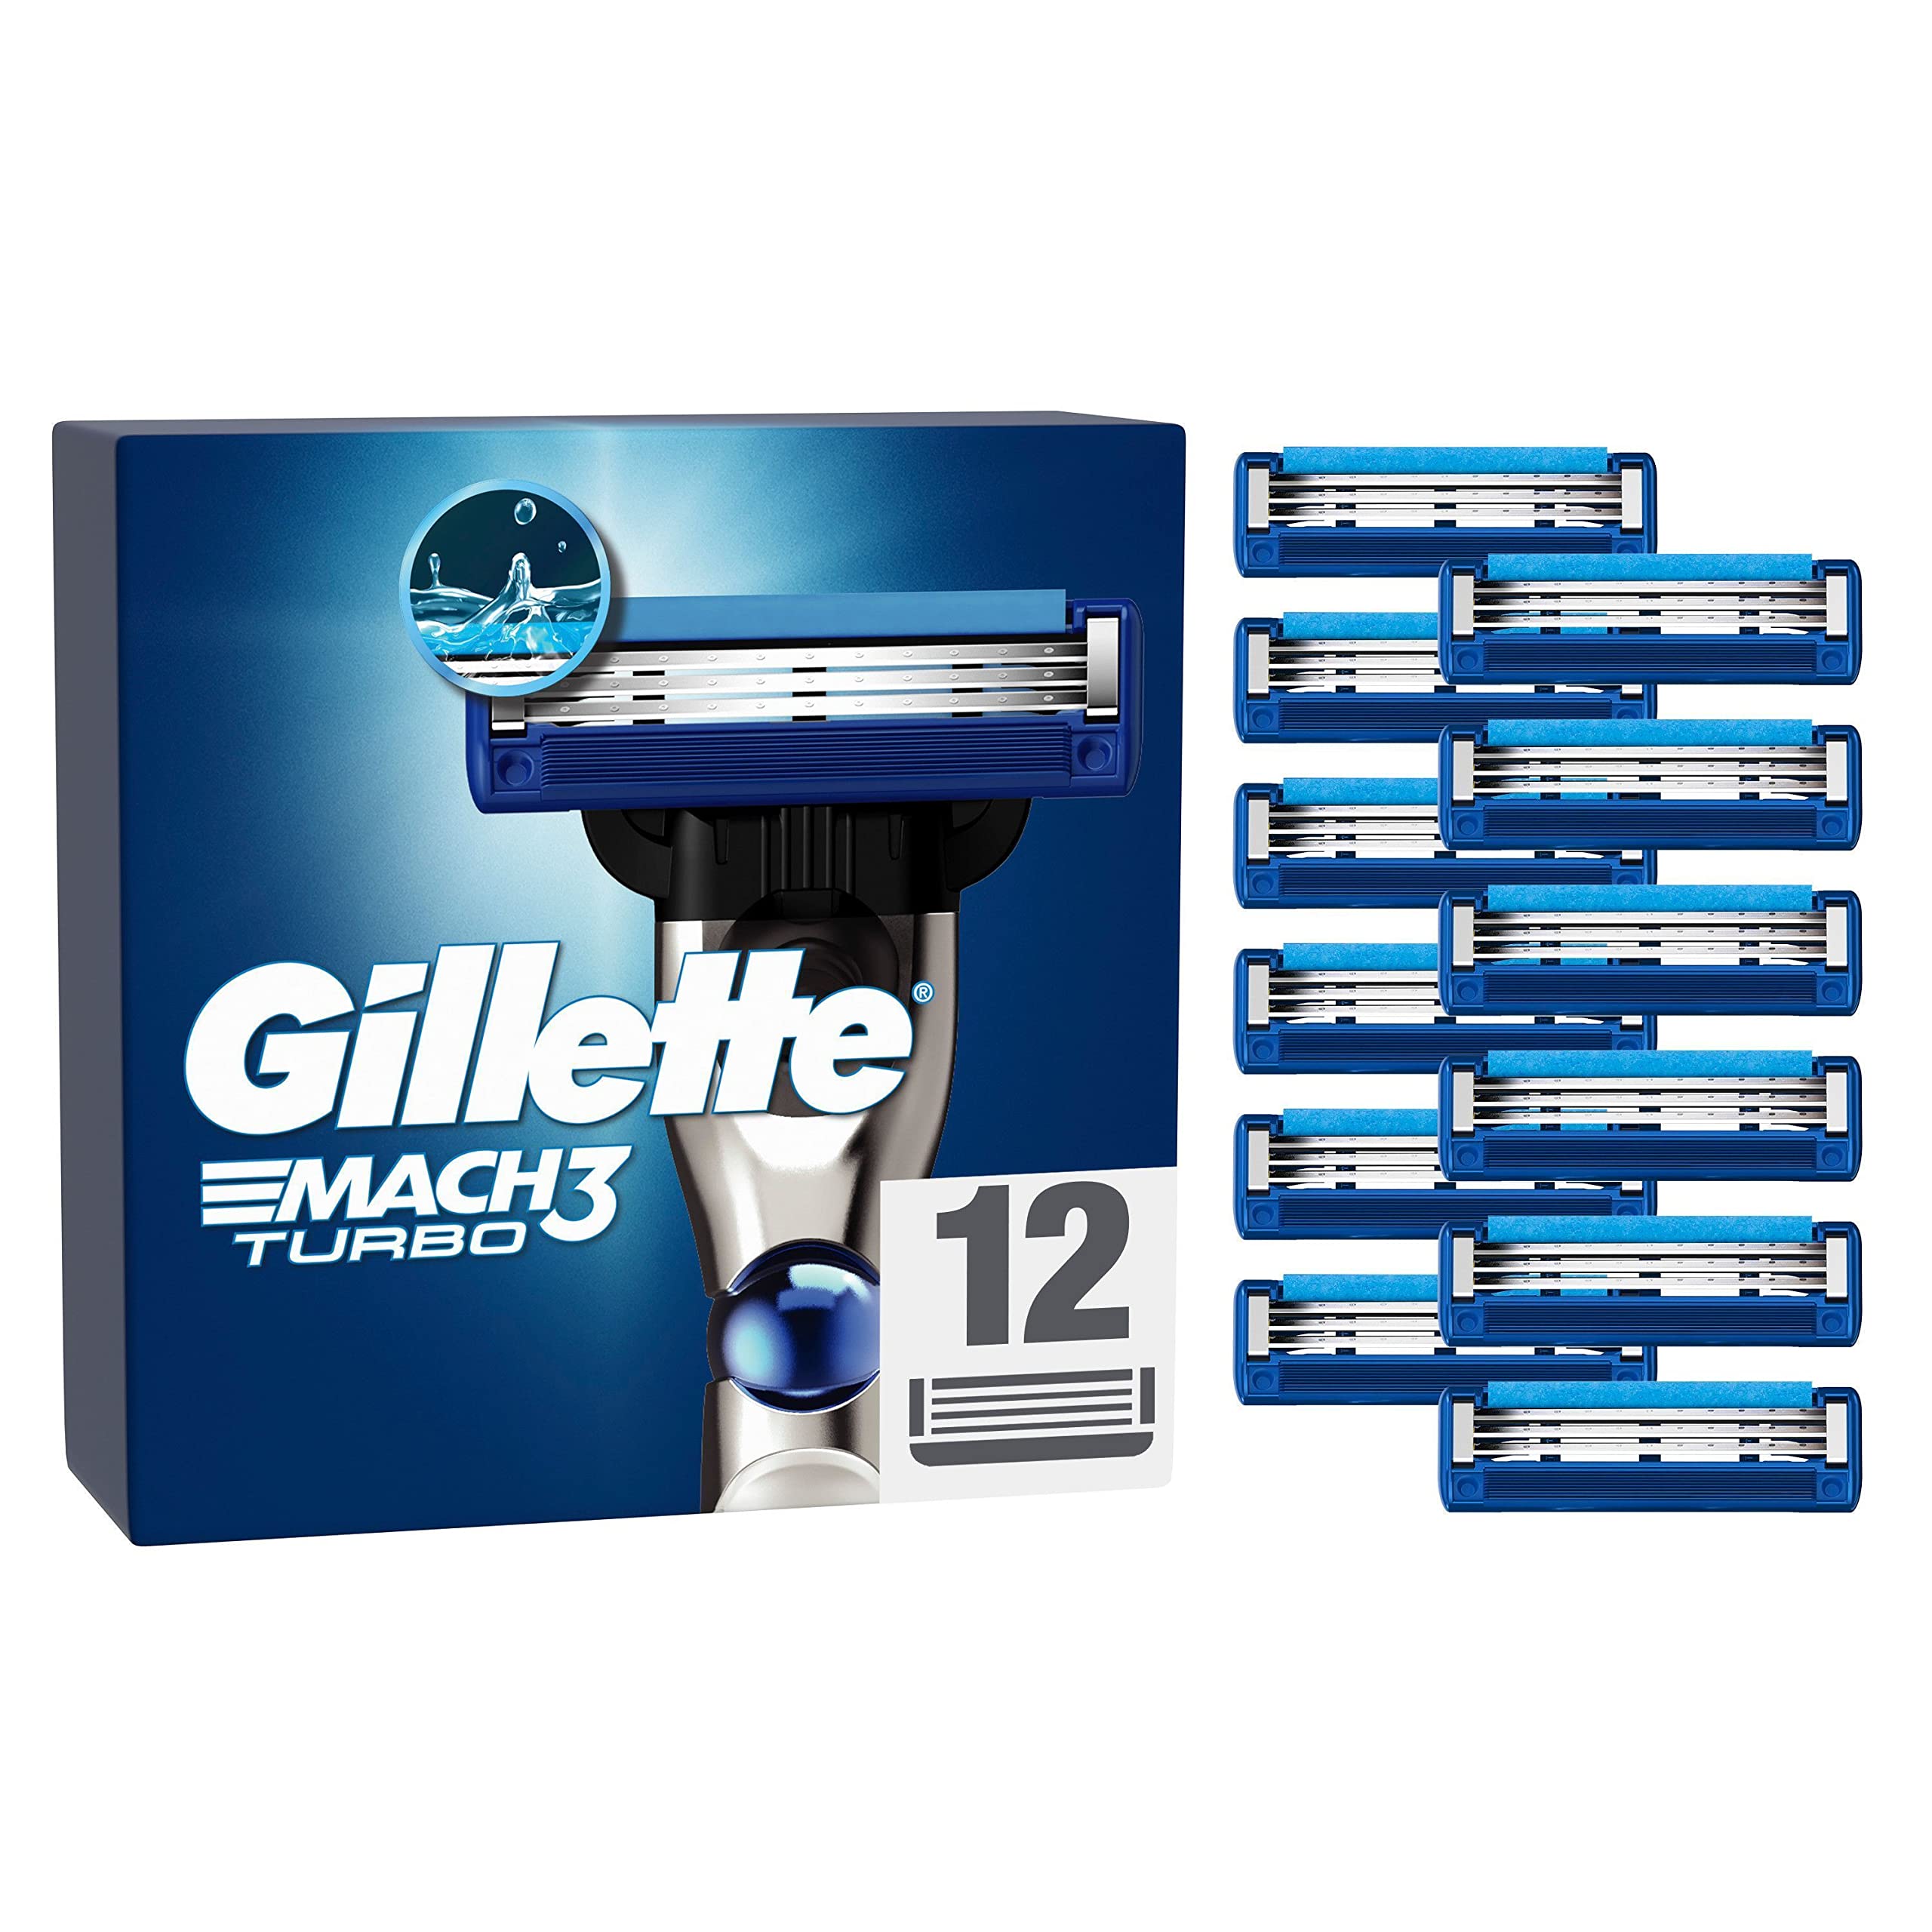 Gillette Mach3 Turbo Rasierklingen für Rasierer, 12 Ersatzklingen für Nassrasierer Herren mit 3-fach Klinge